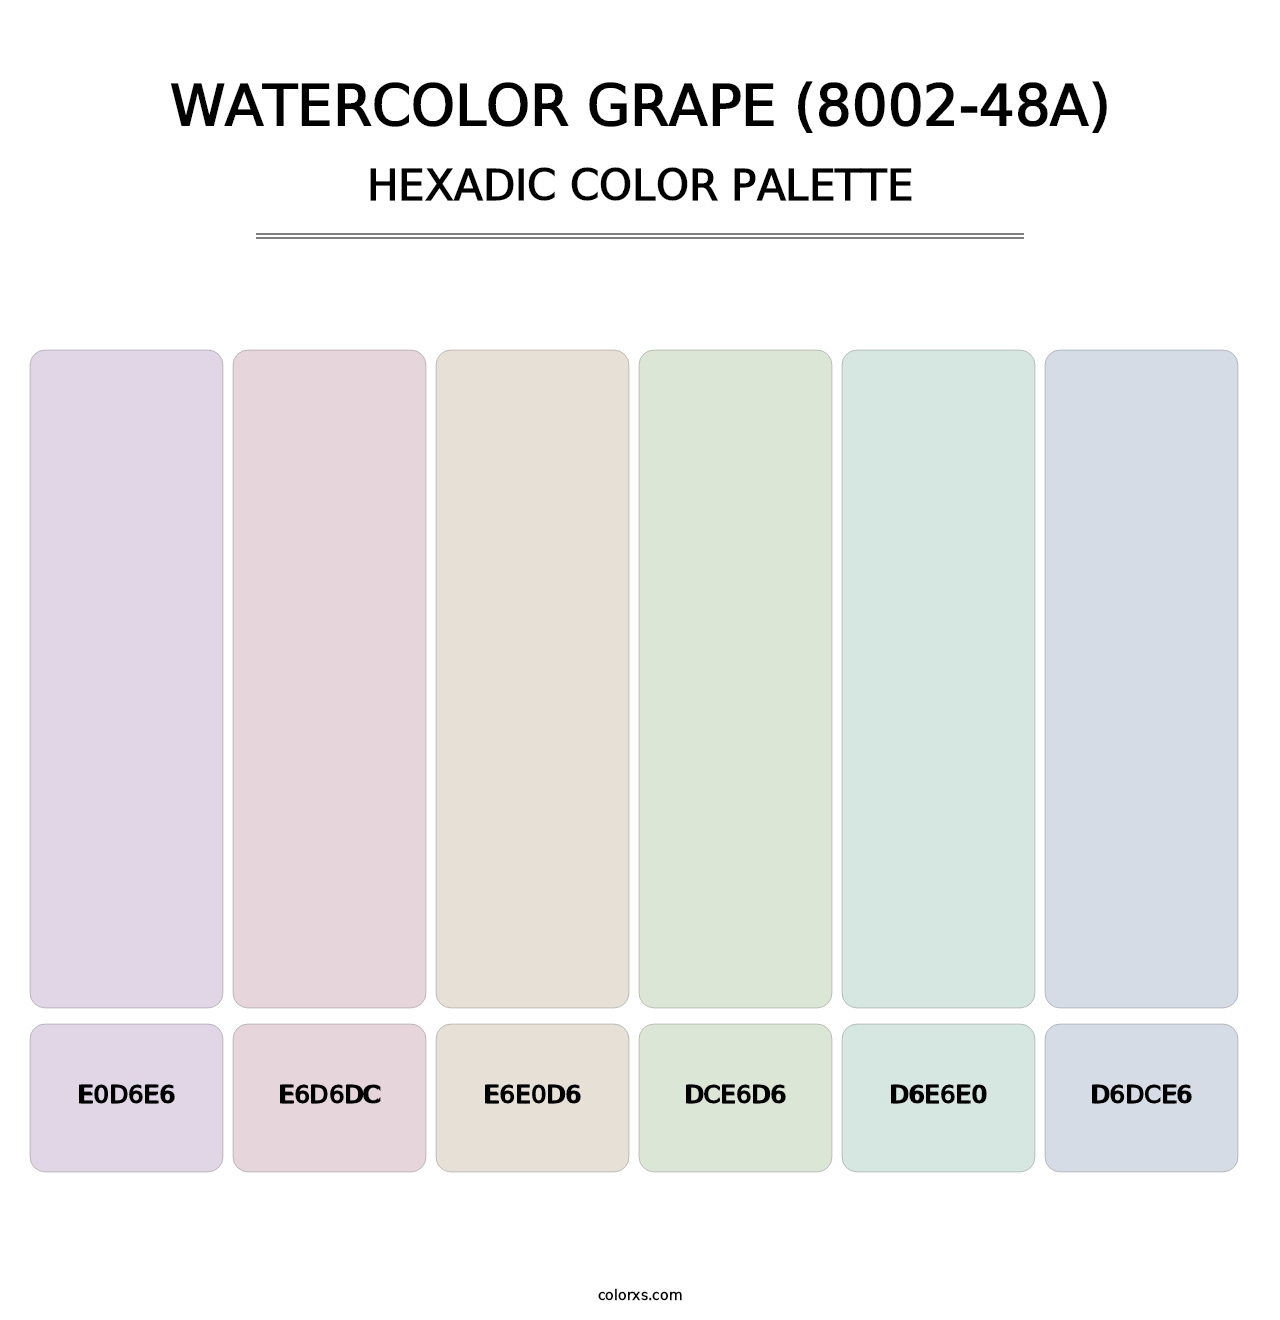 Watercolor Grape (8002-48A) - Hexadic Color Palette